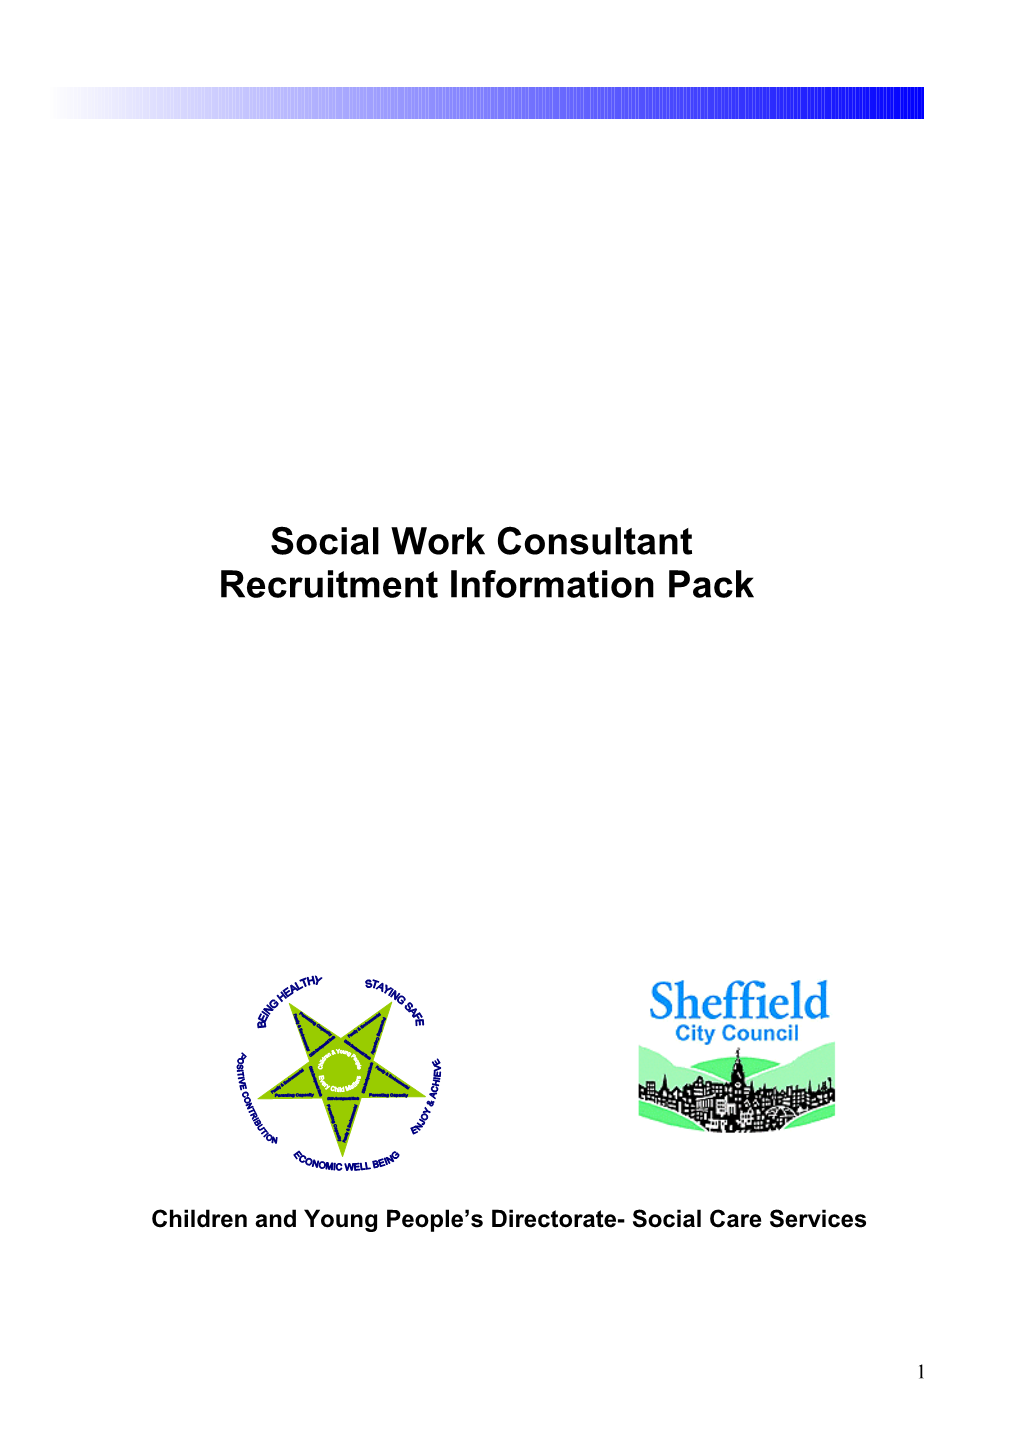 Social Worker Recruitment